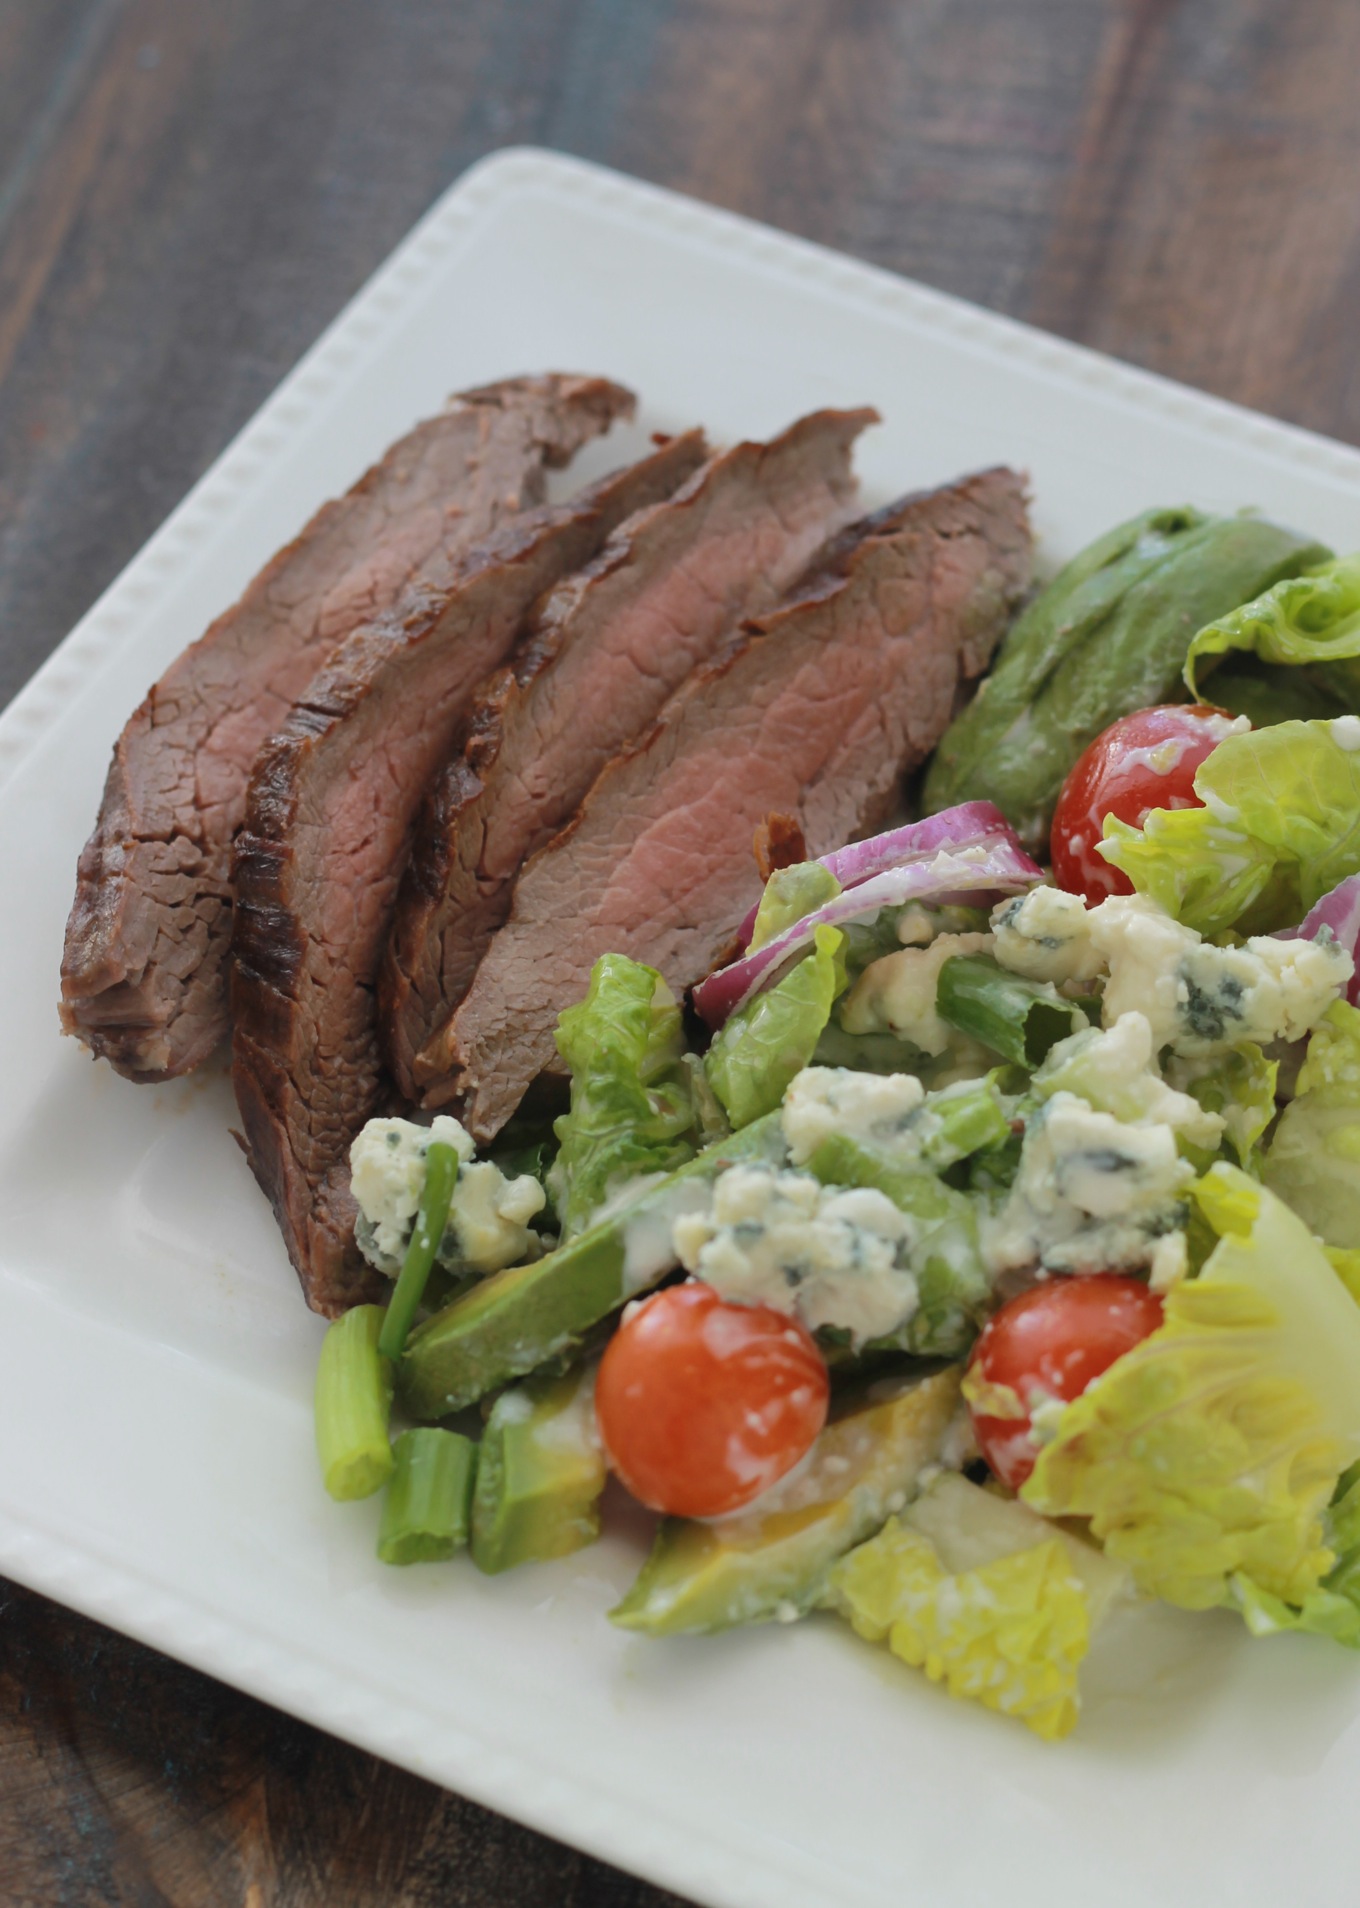 Cette salade de steak grillé et sa sauce au fromage bleu est un régal. Avec du pain complet, vous avez un bon repas facile, rapide, coloré et équilibré./ cuisineculinaire.com